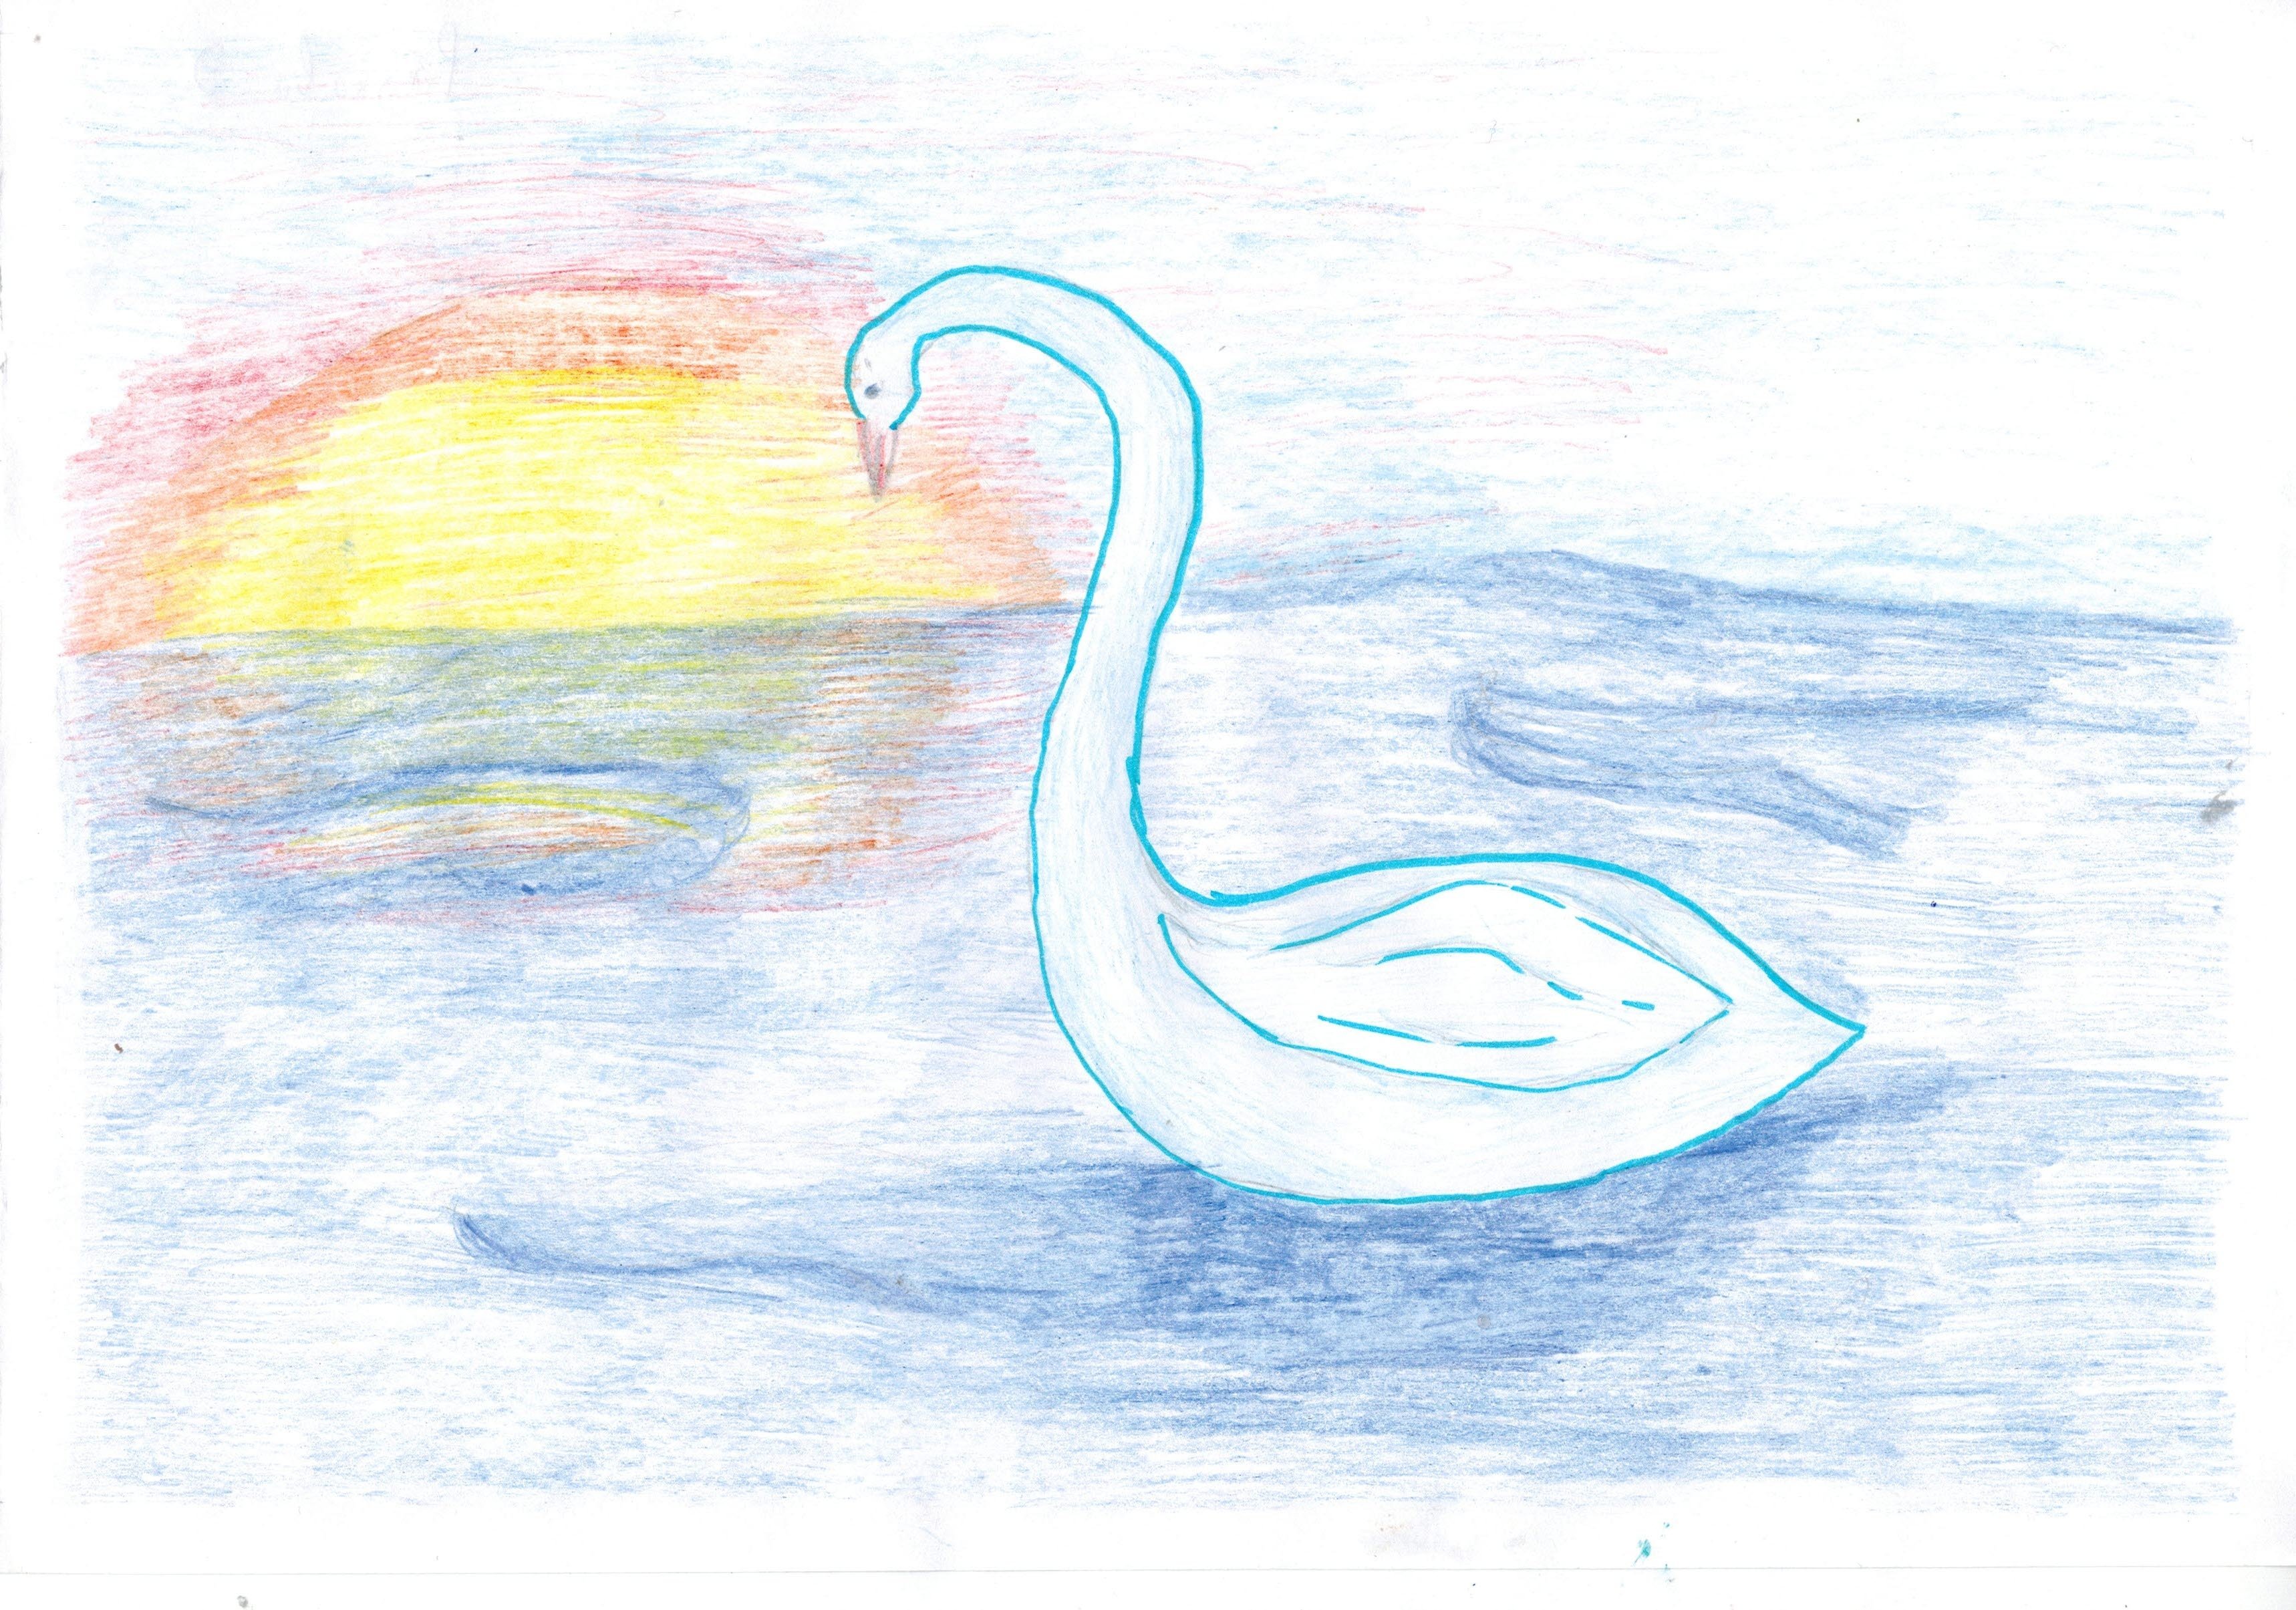 Произведение лебедь. Сен Санс лебедь иллюстрация. Сен-Санса лебедь рисунок. Рисунок к пьесе "лебедь" сен-Санса. Сен-Санс карнавал животных лебедь.